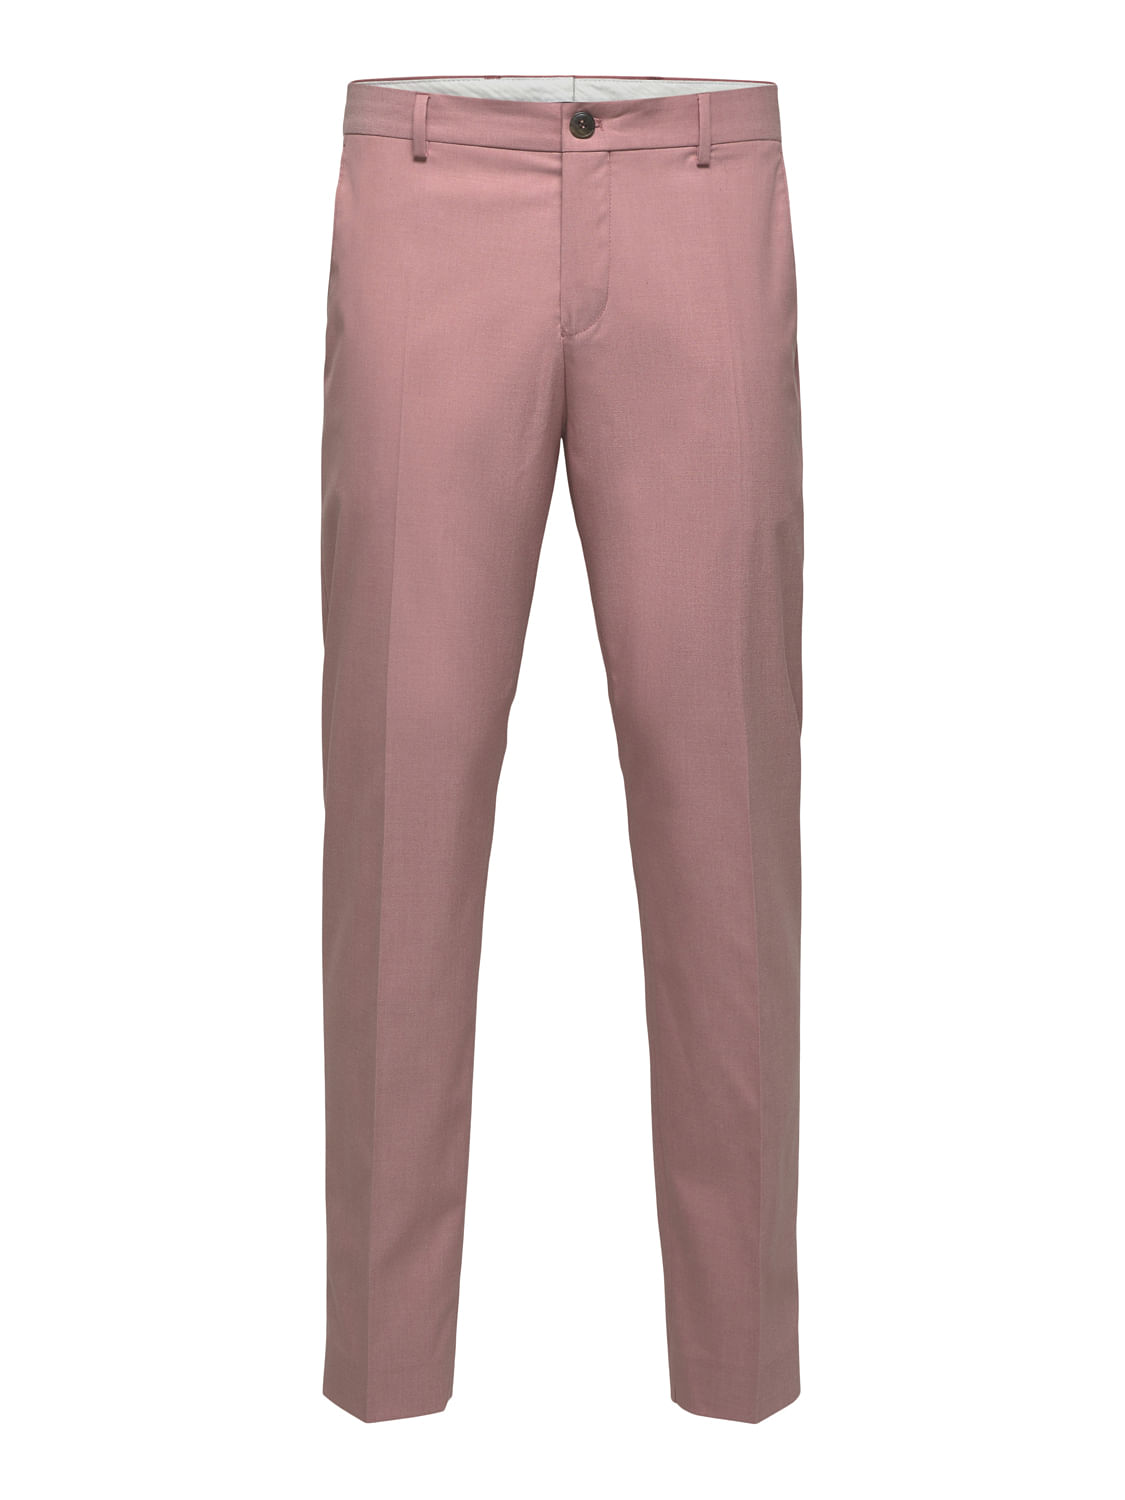 Buy Men Beige Solid Slim Fit Formal Trousers Online  808147  Peter England